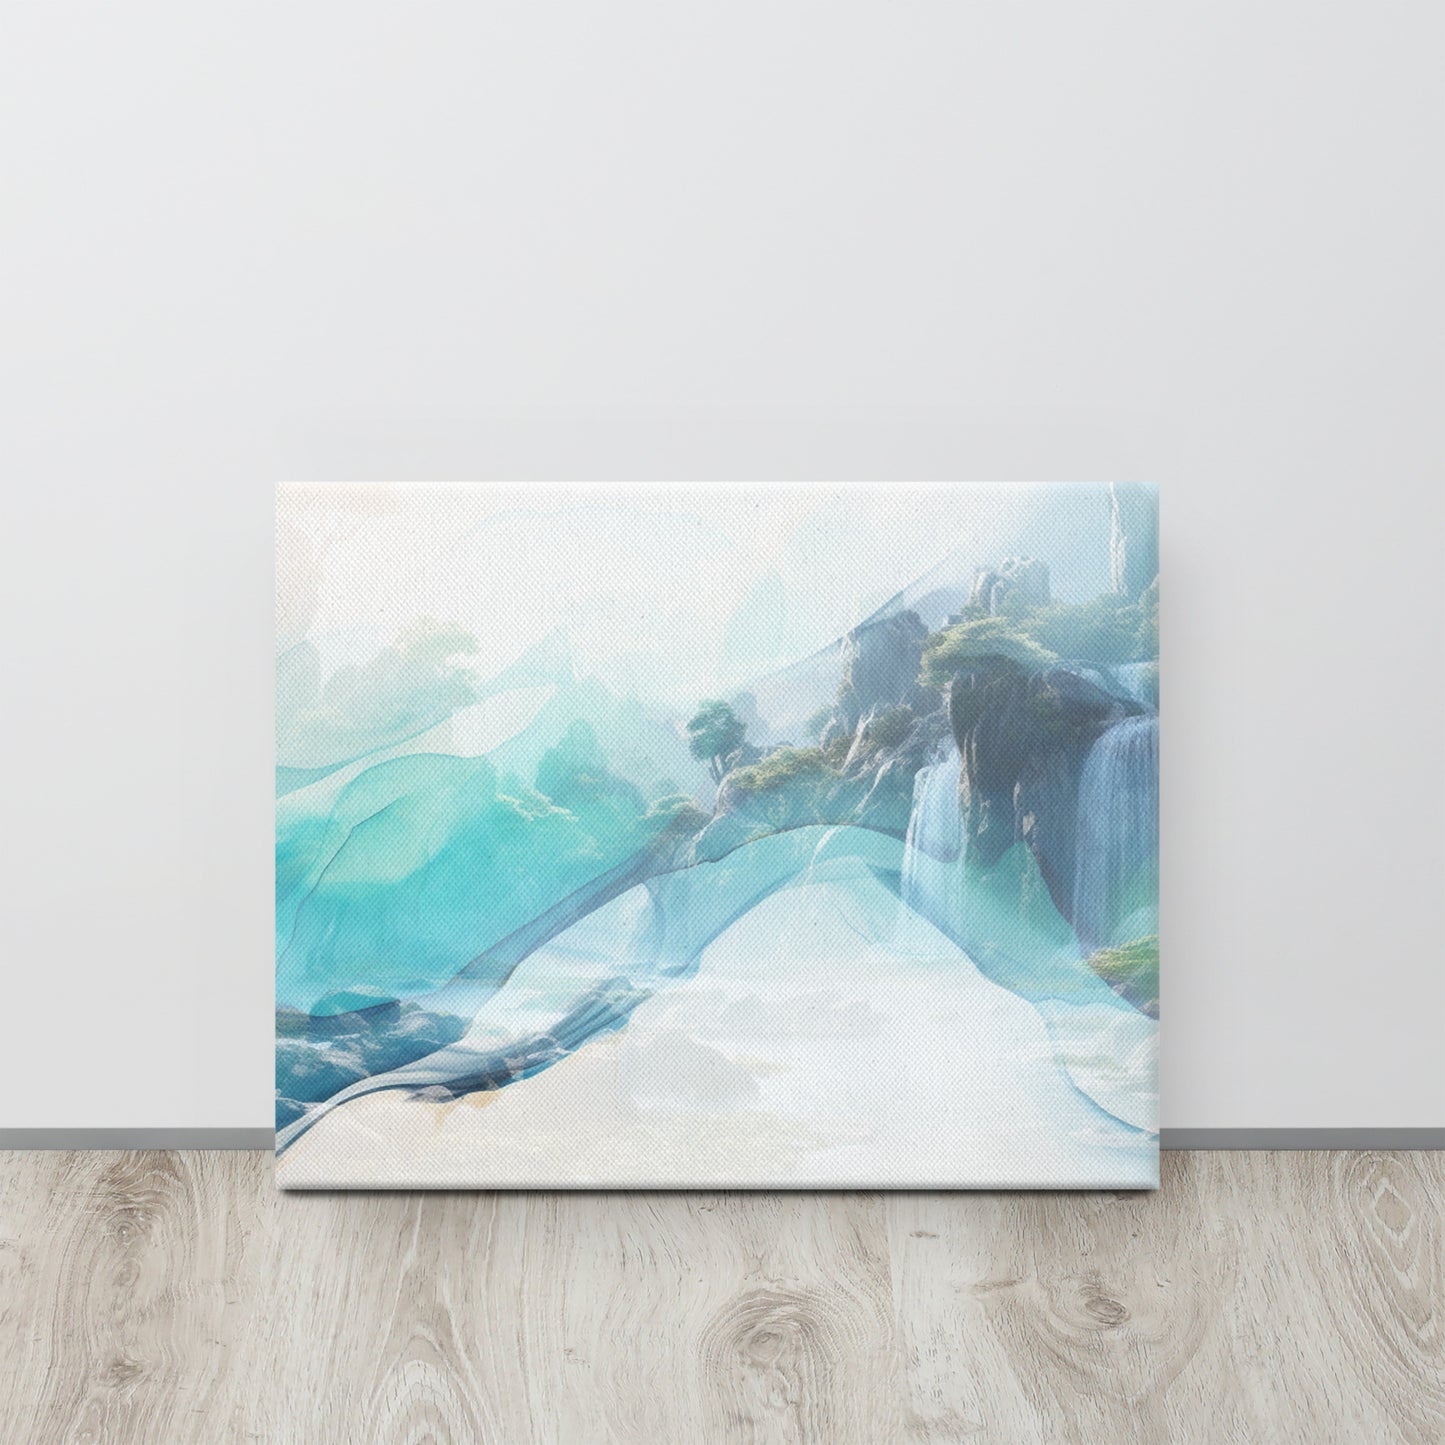 Vivid Dreams Waterfalls Canvas Print - Dreamscape Collection by Neduz Designs